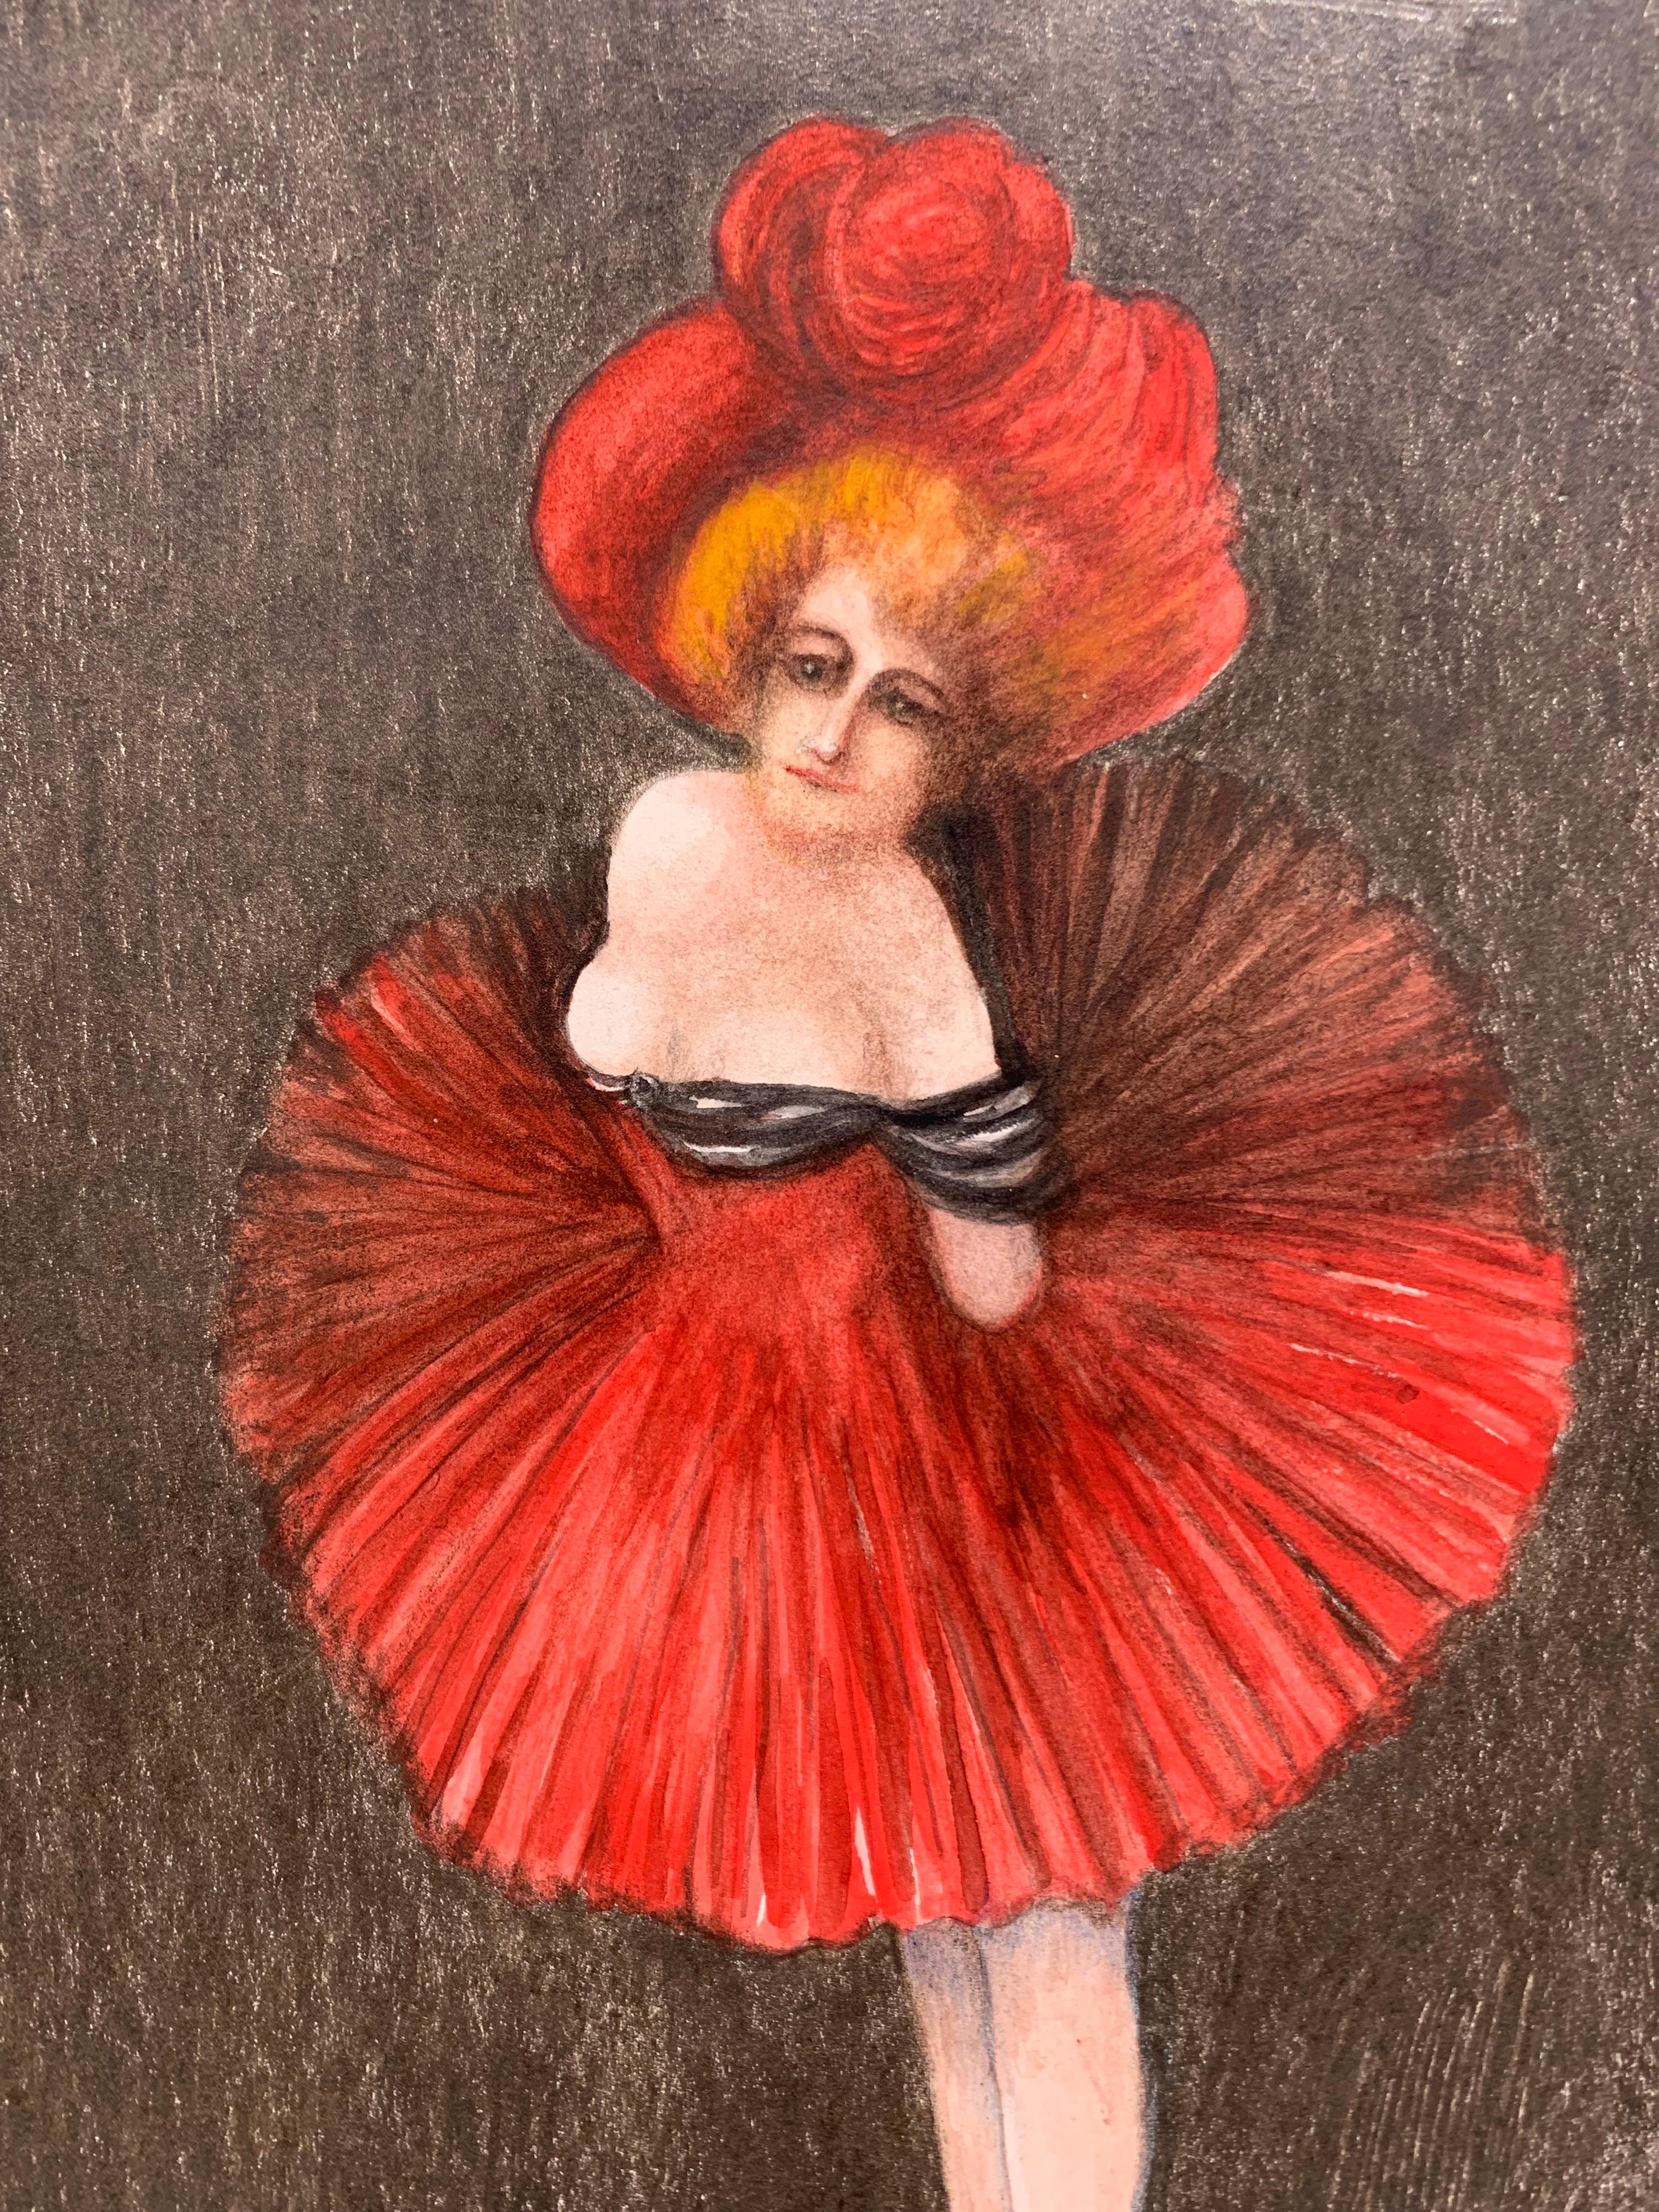 Showgirl (Chorus Girl drawing) - Art by Elmer Pirson